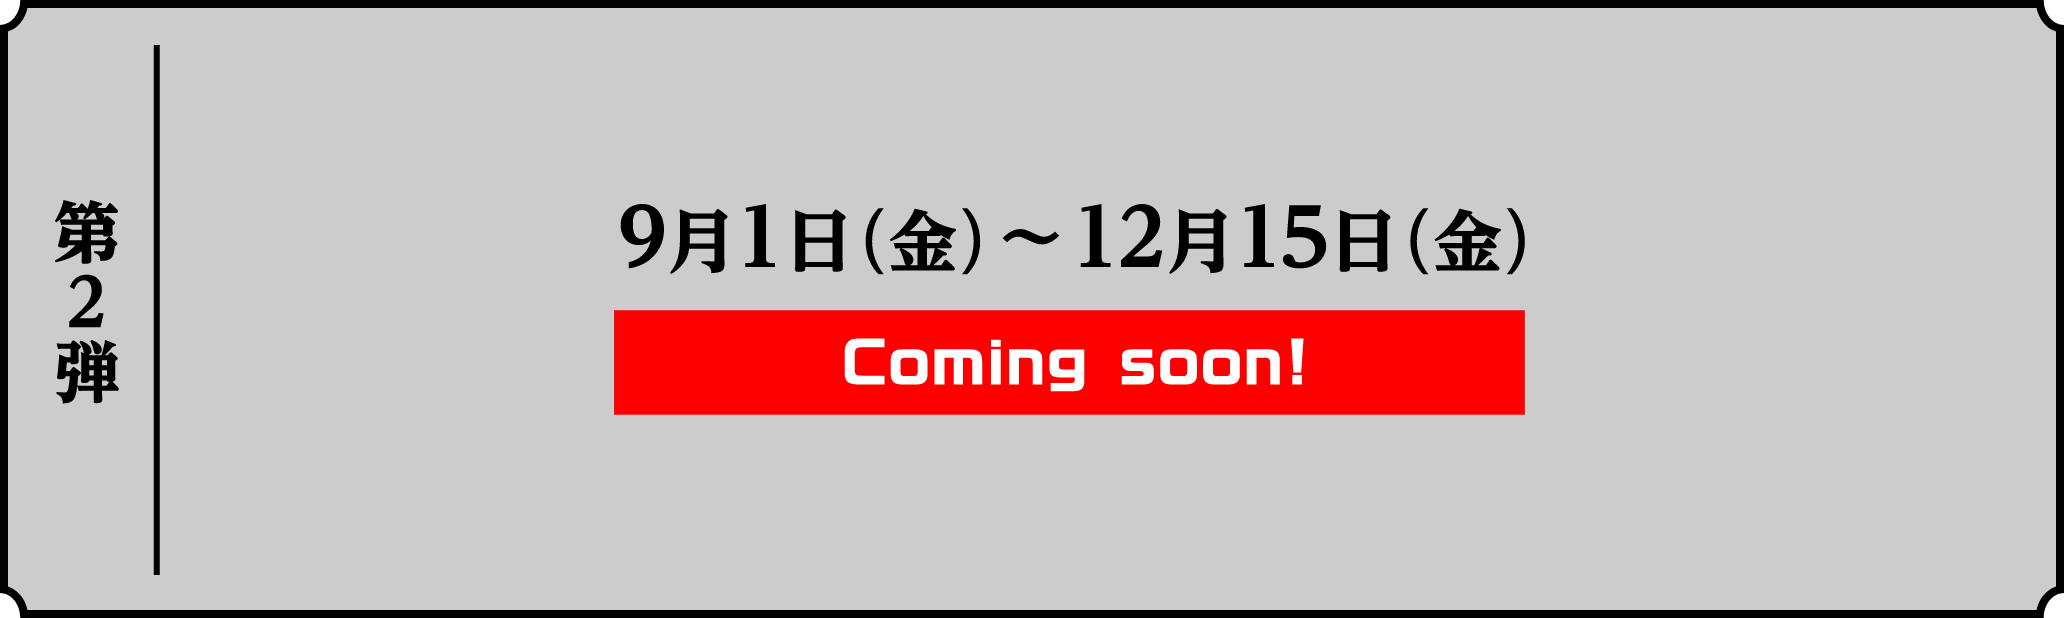 第2弾 9月1日(金)〜12月15日(金) Coming soon!